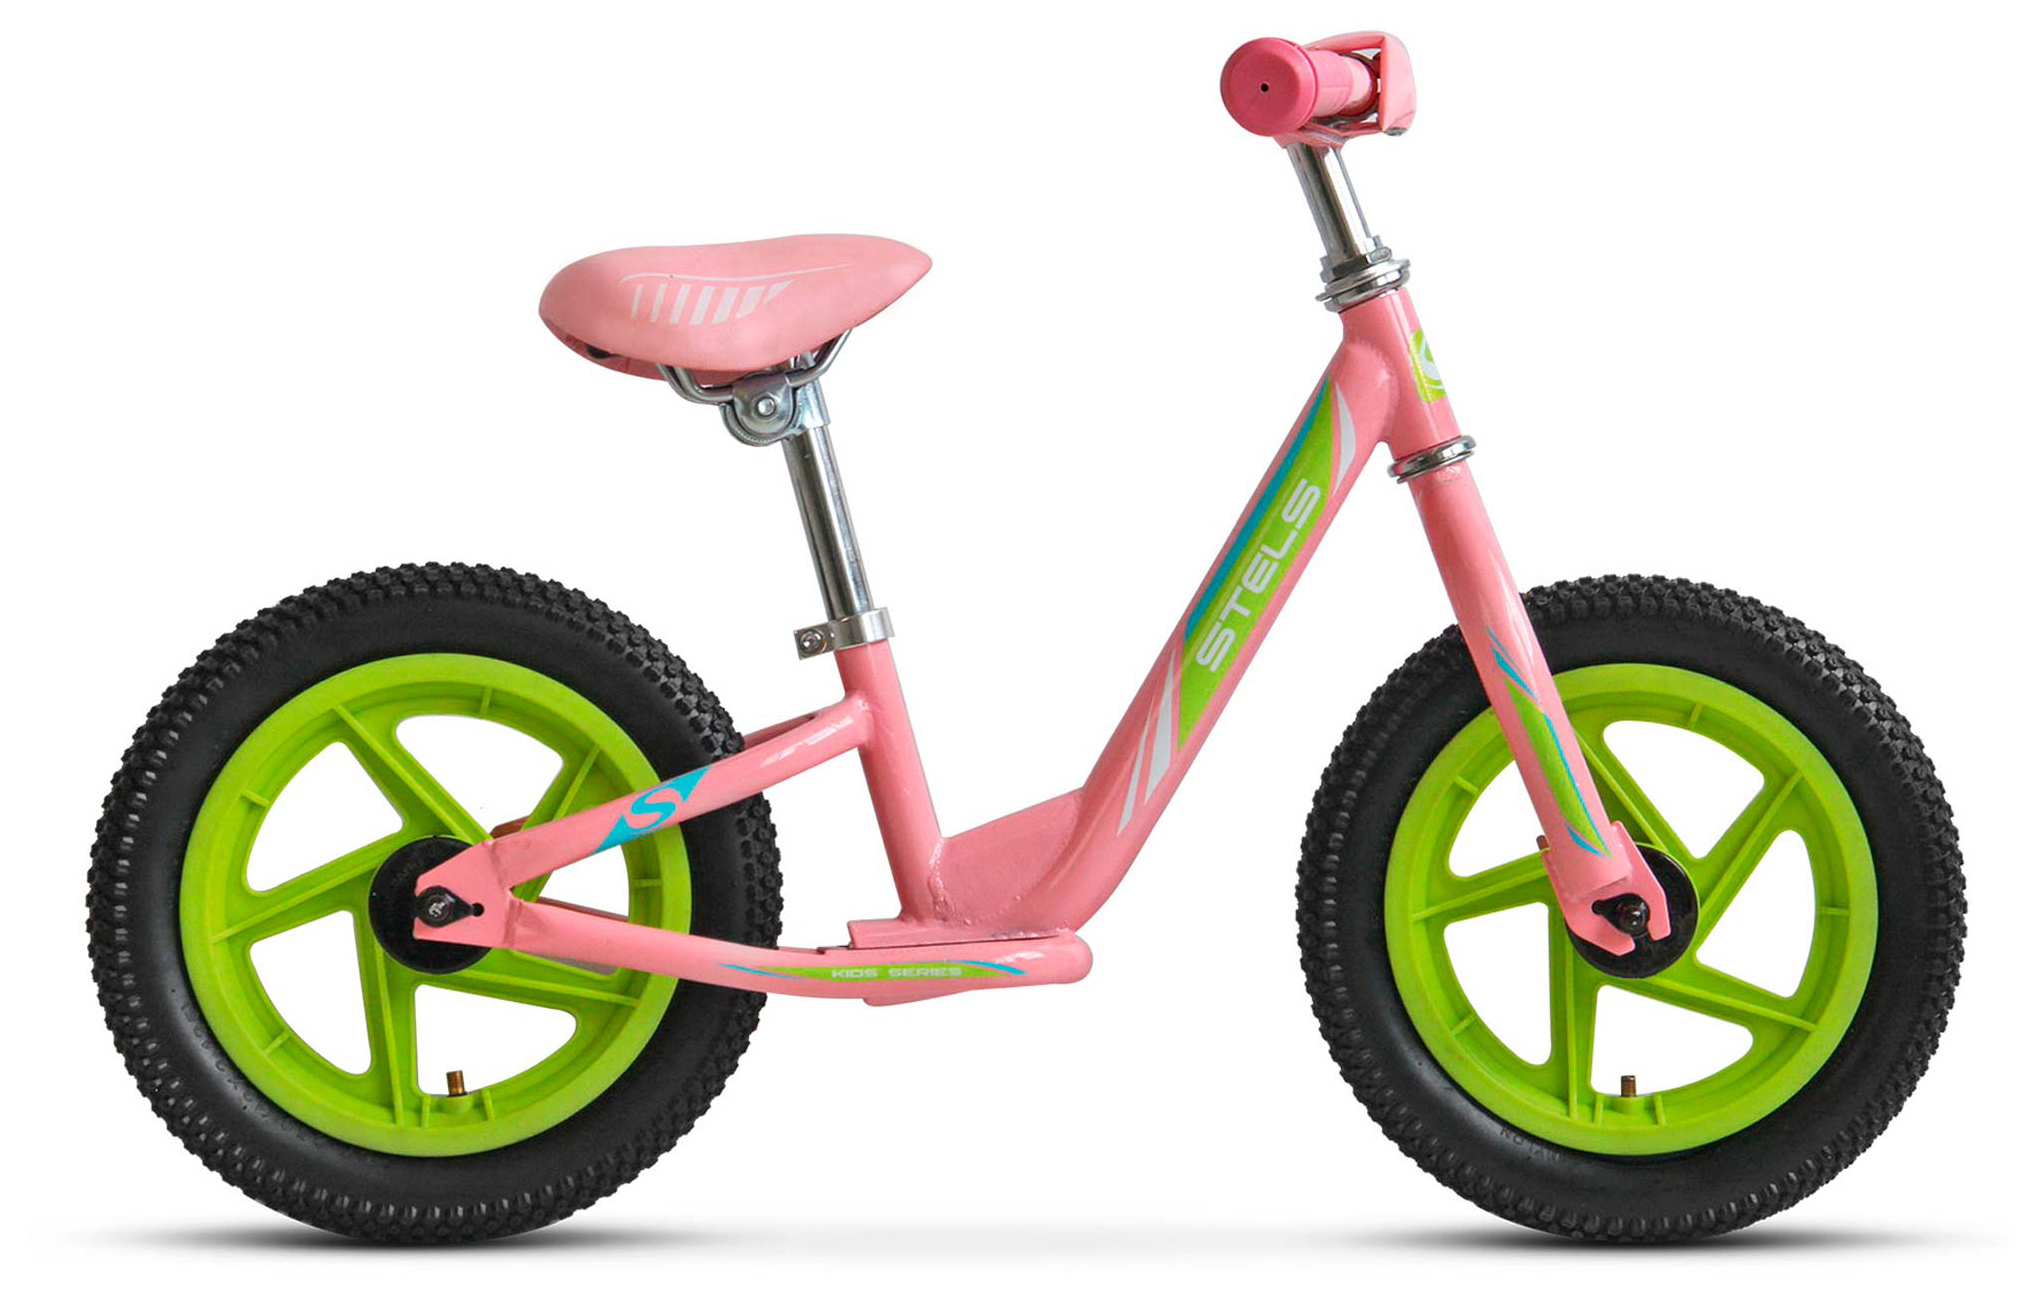  Отзывы о Детском велосипеде Stels Powerkid 12" Girl (V020) 2019